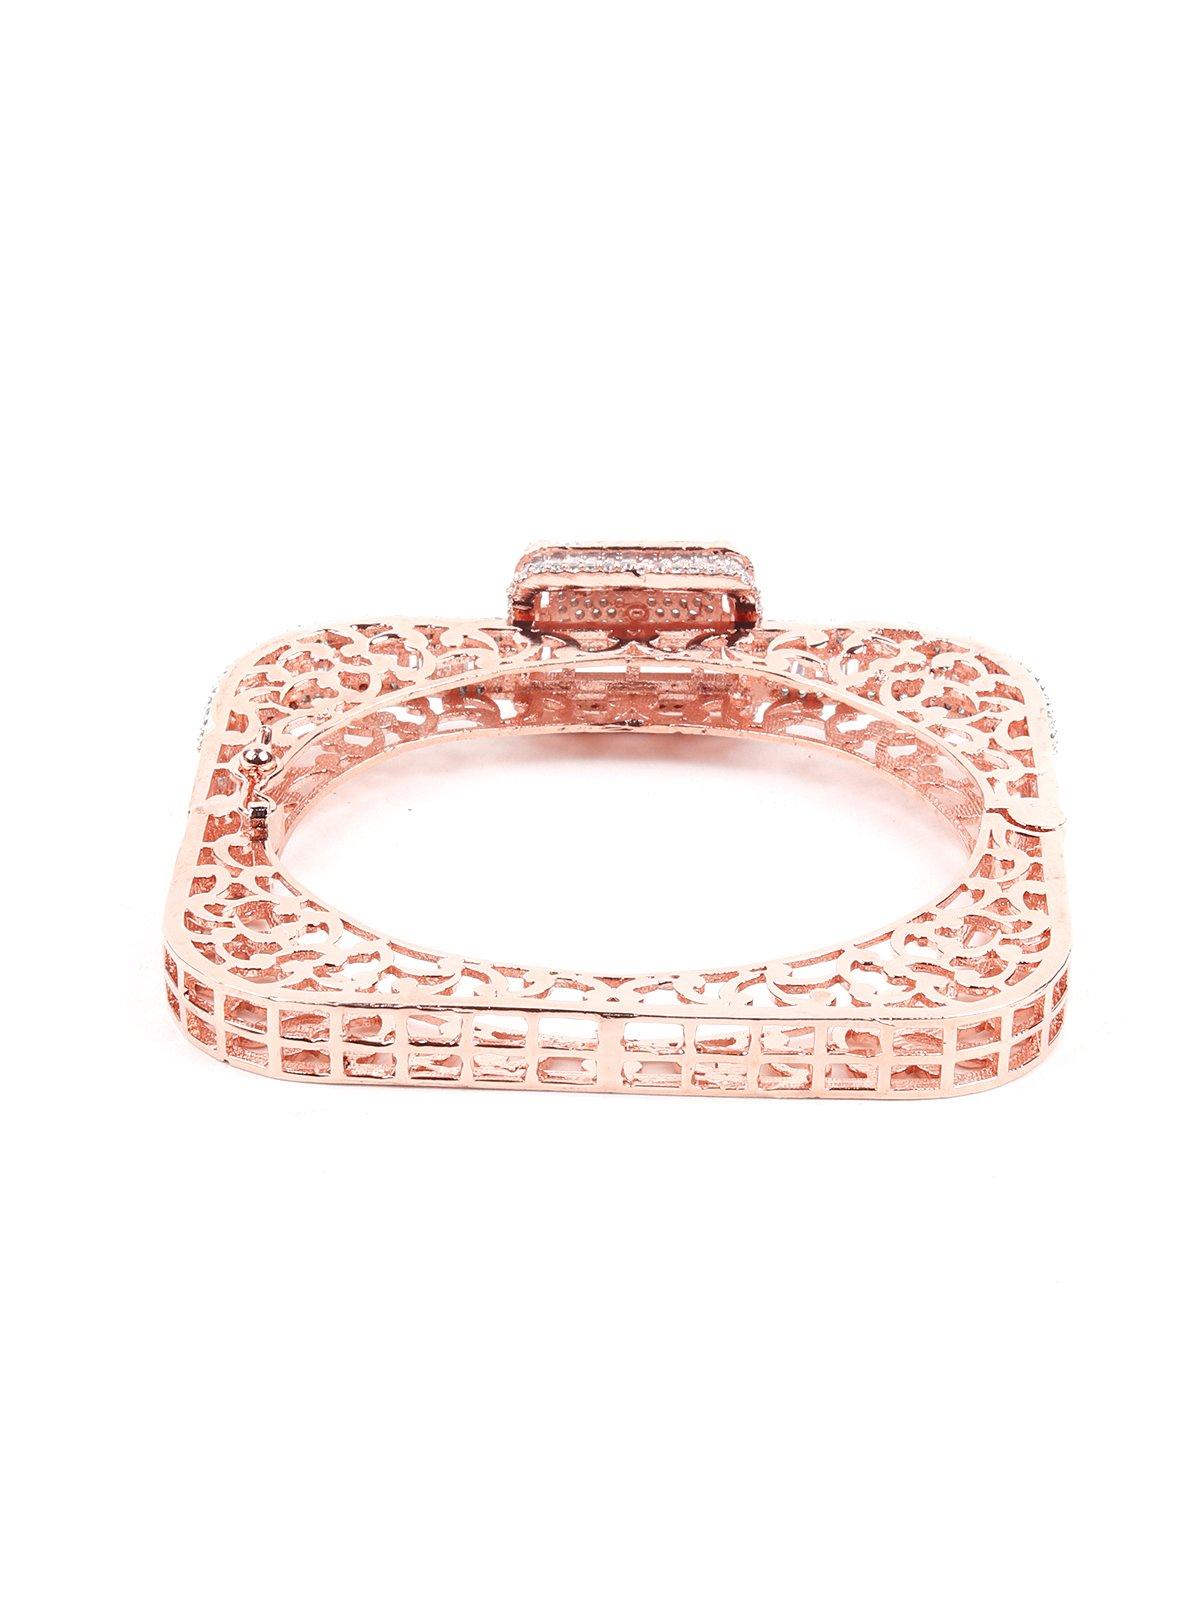 Women's Square Shaped Crystal Embellished Bracelet-Gold-Tone - Odette